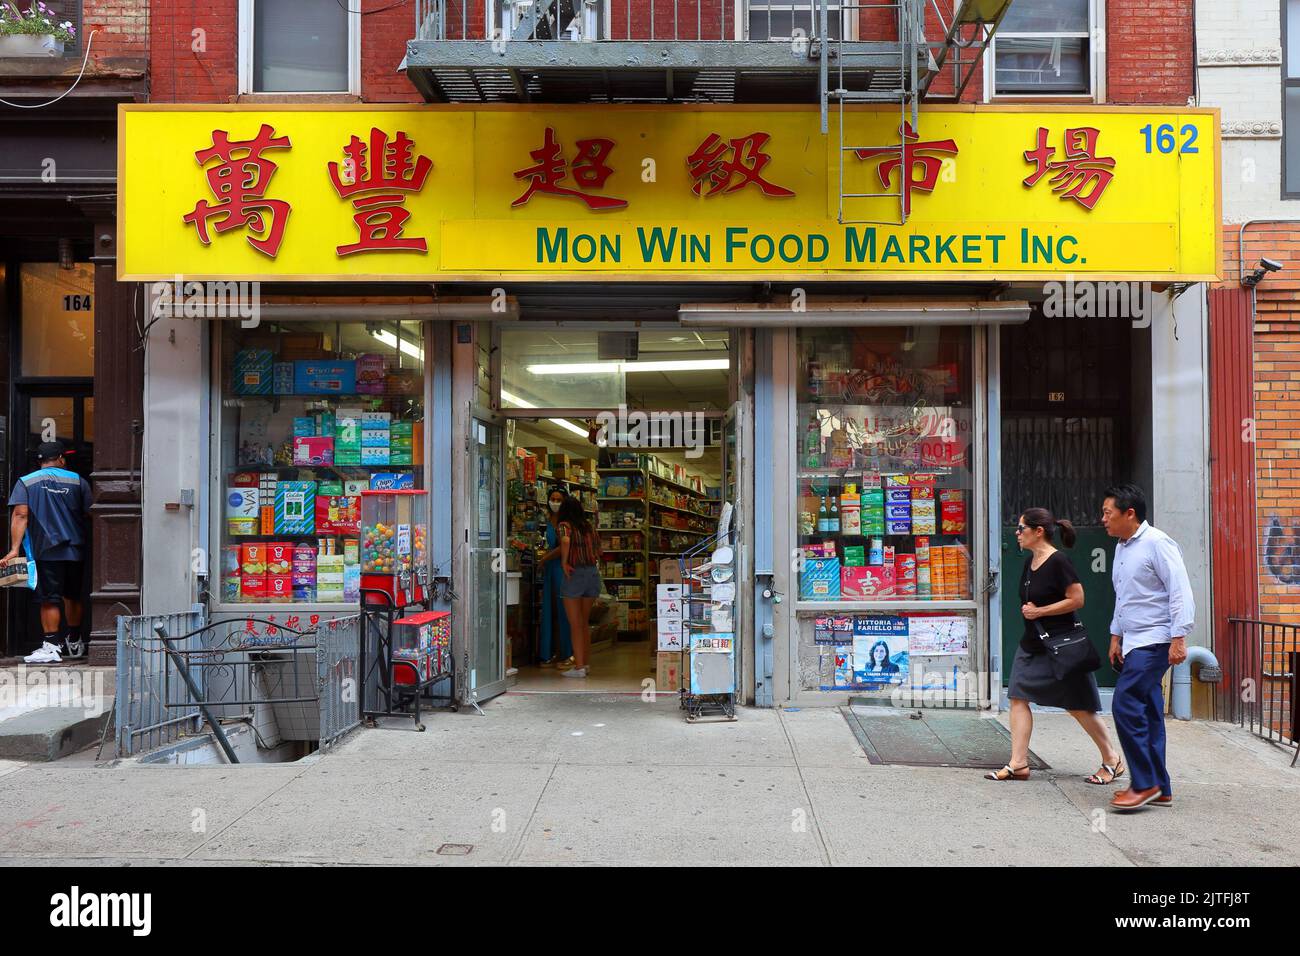 Marché alimentaire mon Win, 162 Mott St, New York, NYC photo d'une épicerie asiatique dans le quartier chinois de Manhattan. supermarché grand win. Banque D'Images